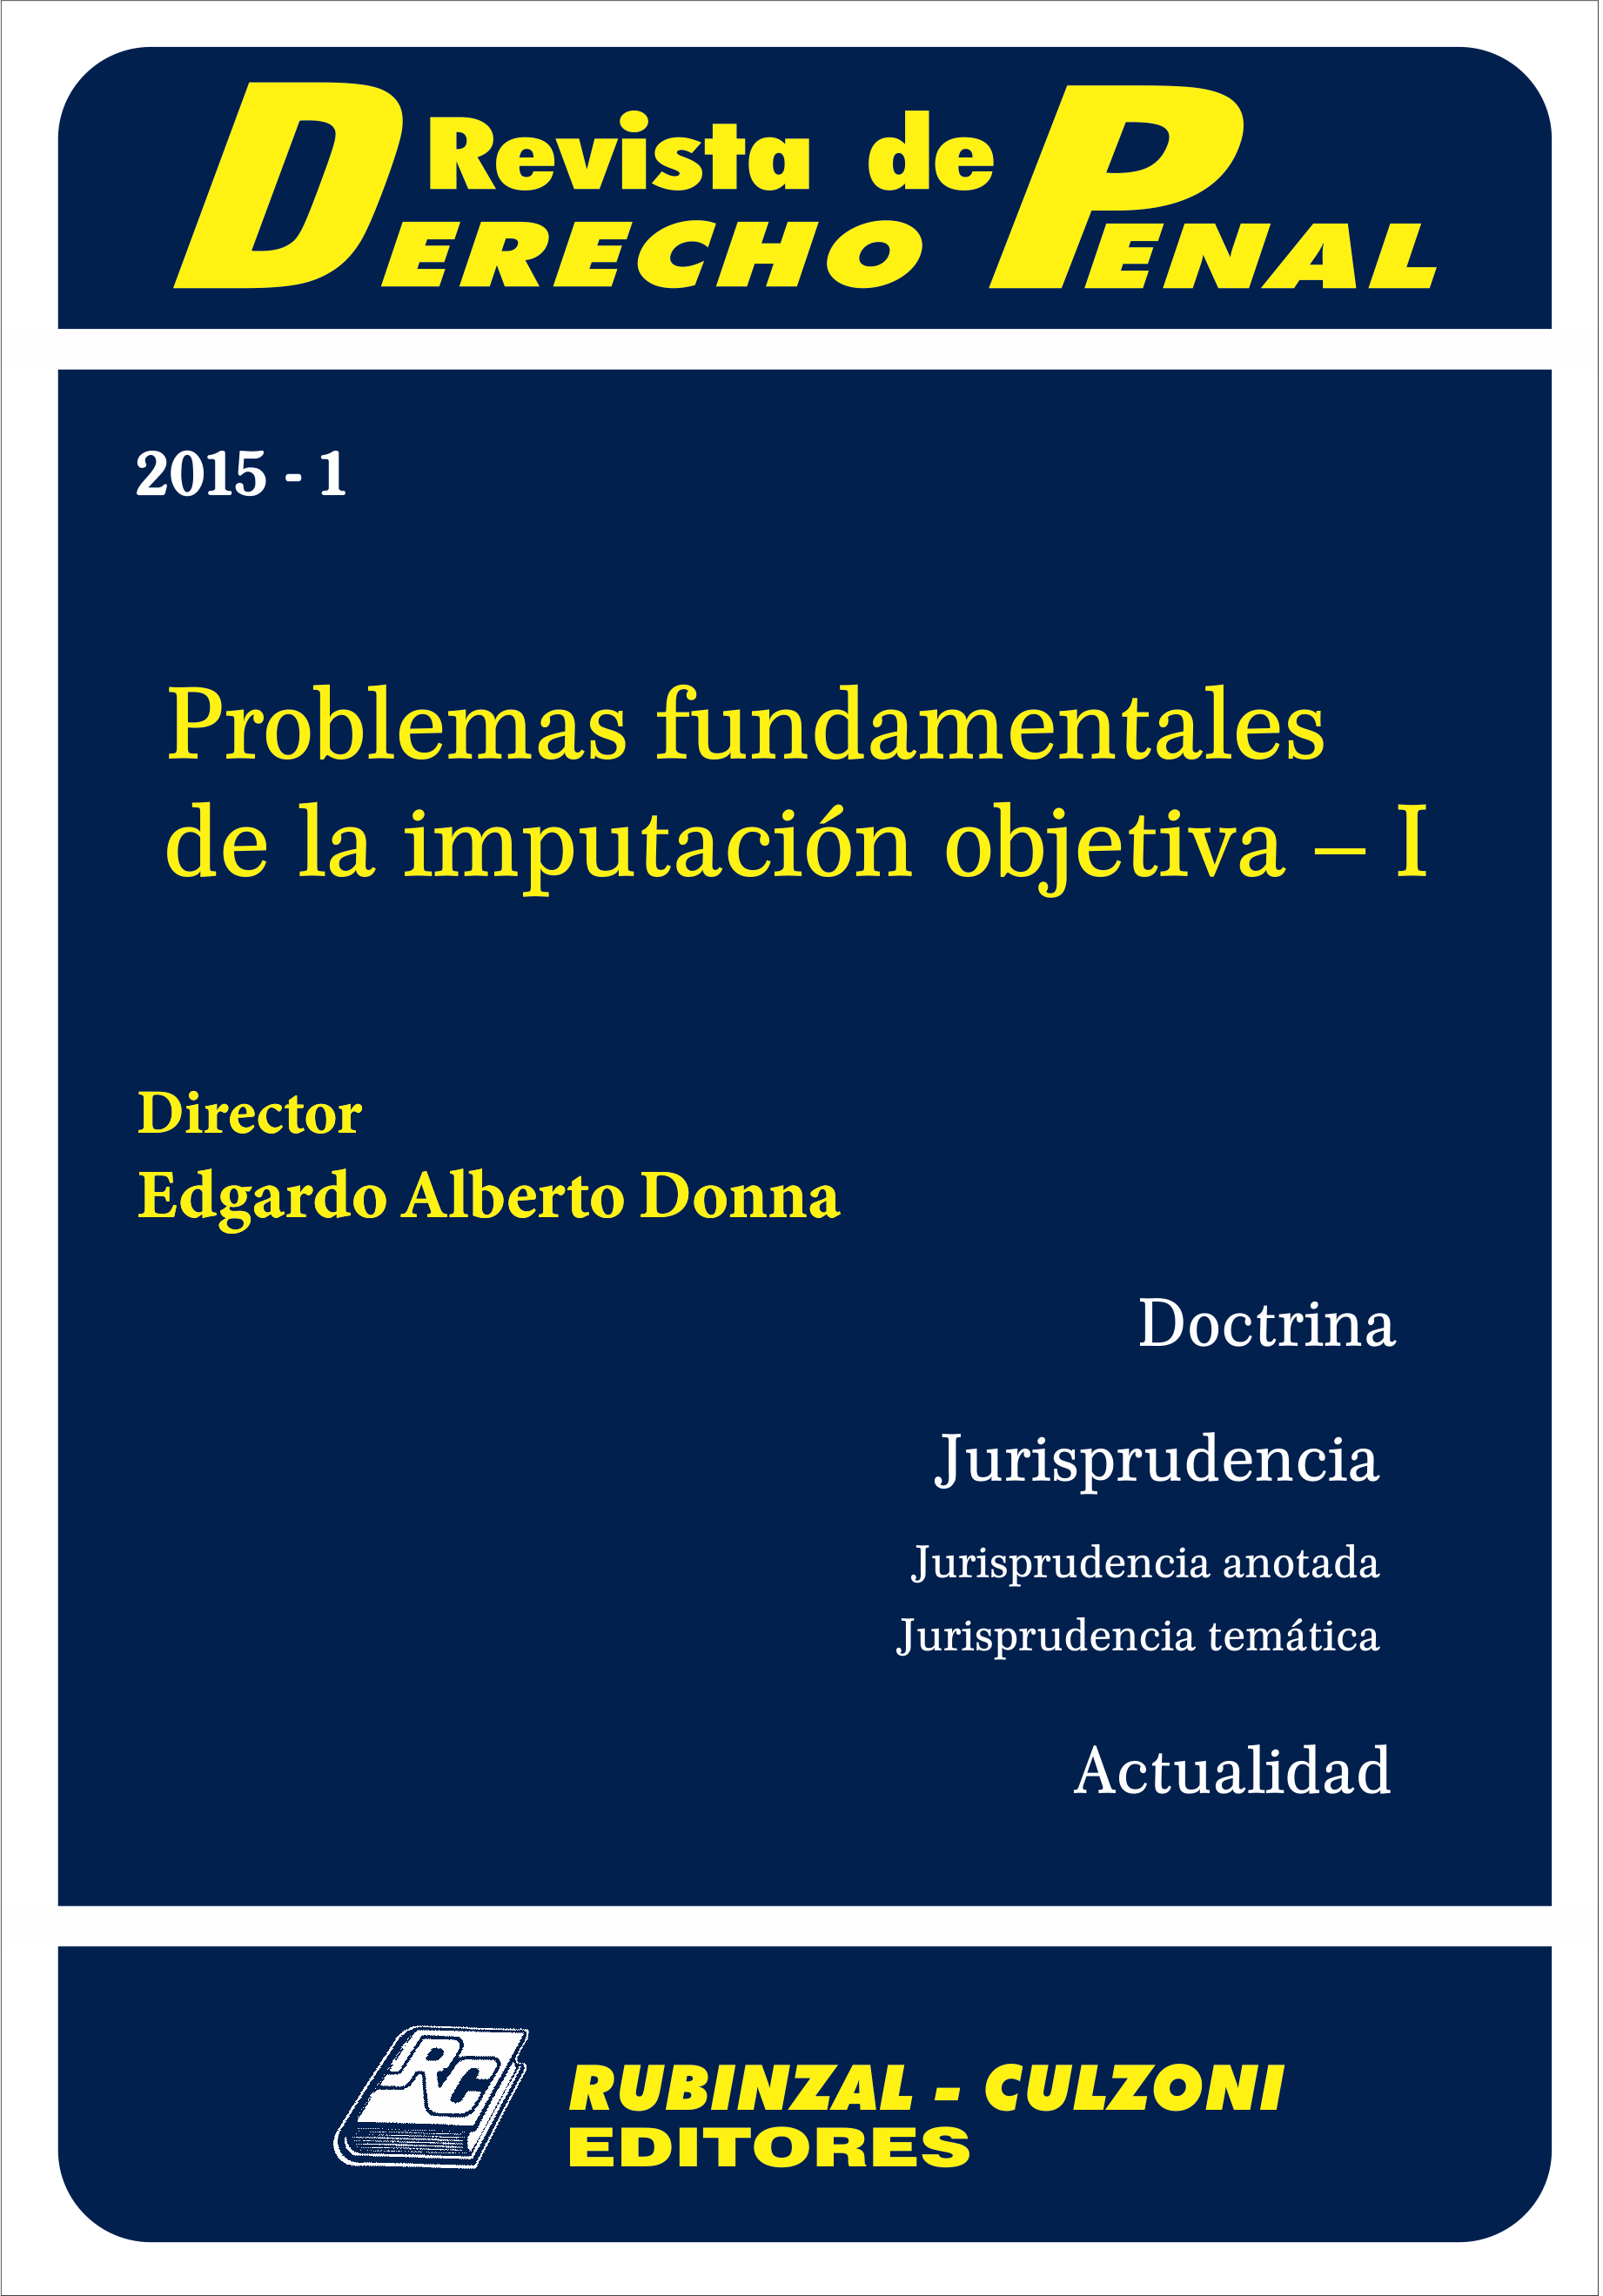 Revista de Derecho Penal - Problemas fundamentales de la imputación objetiva - I